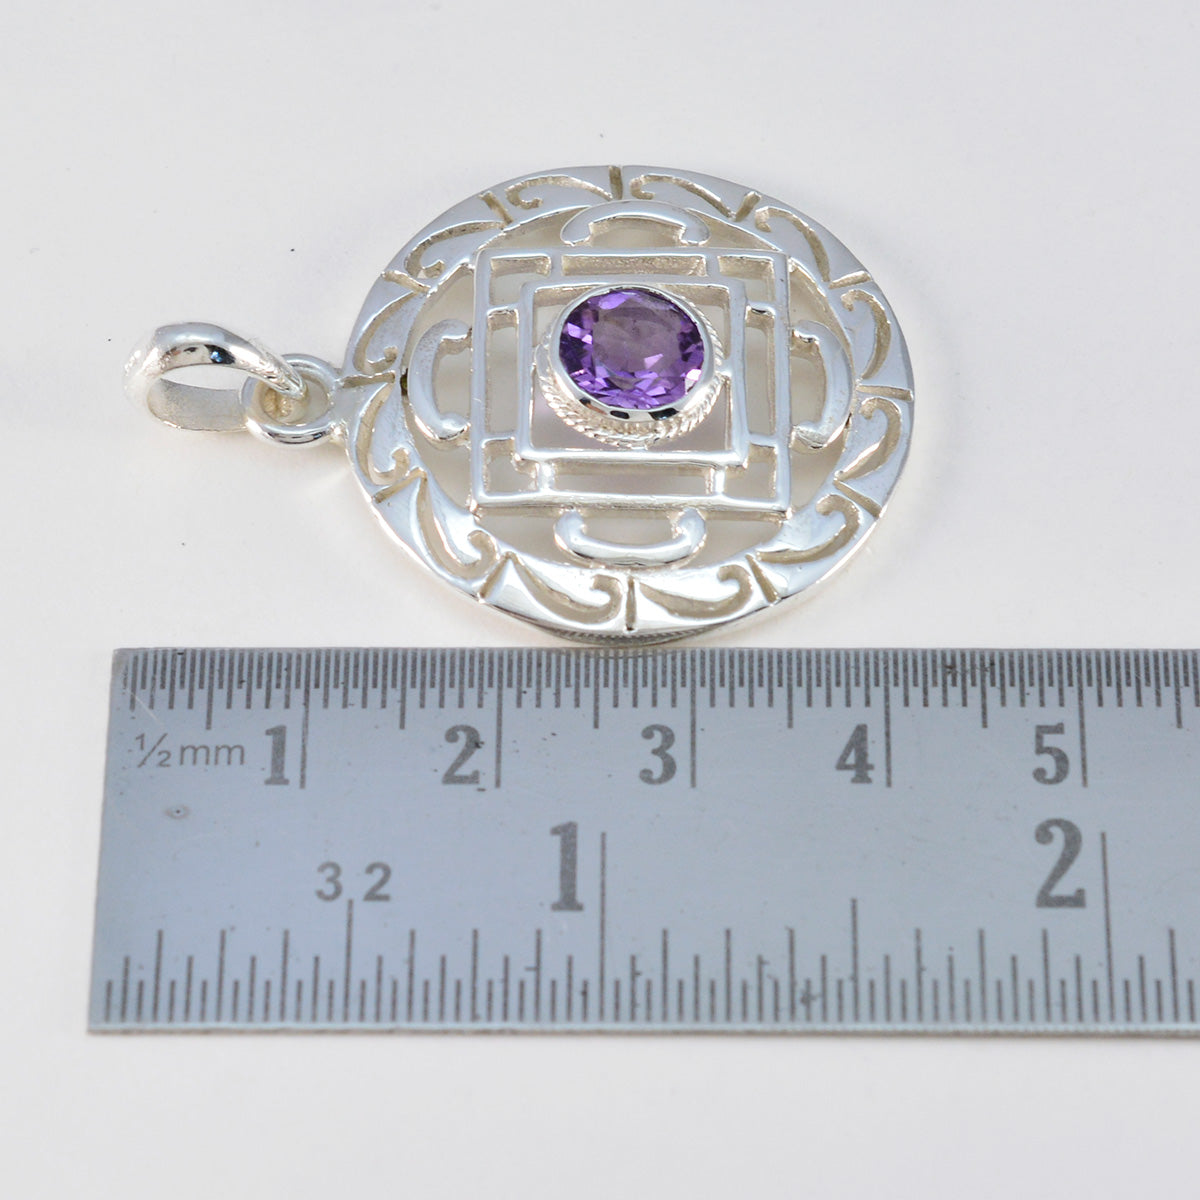 riyo горячий драгоценный камень круглый граненый фиолетовый аметист серебряный кулон 1003 пробы подарок на день учителя